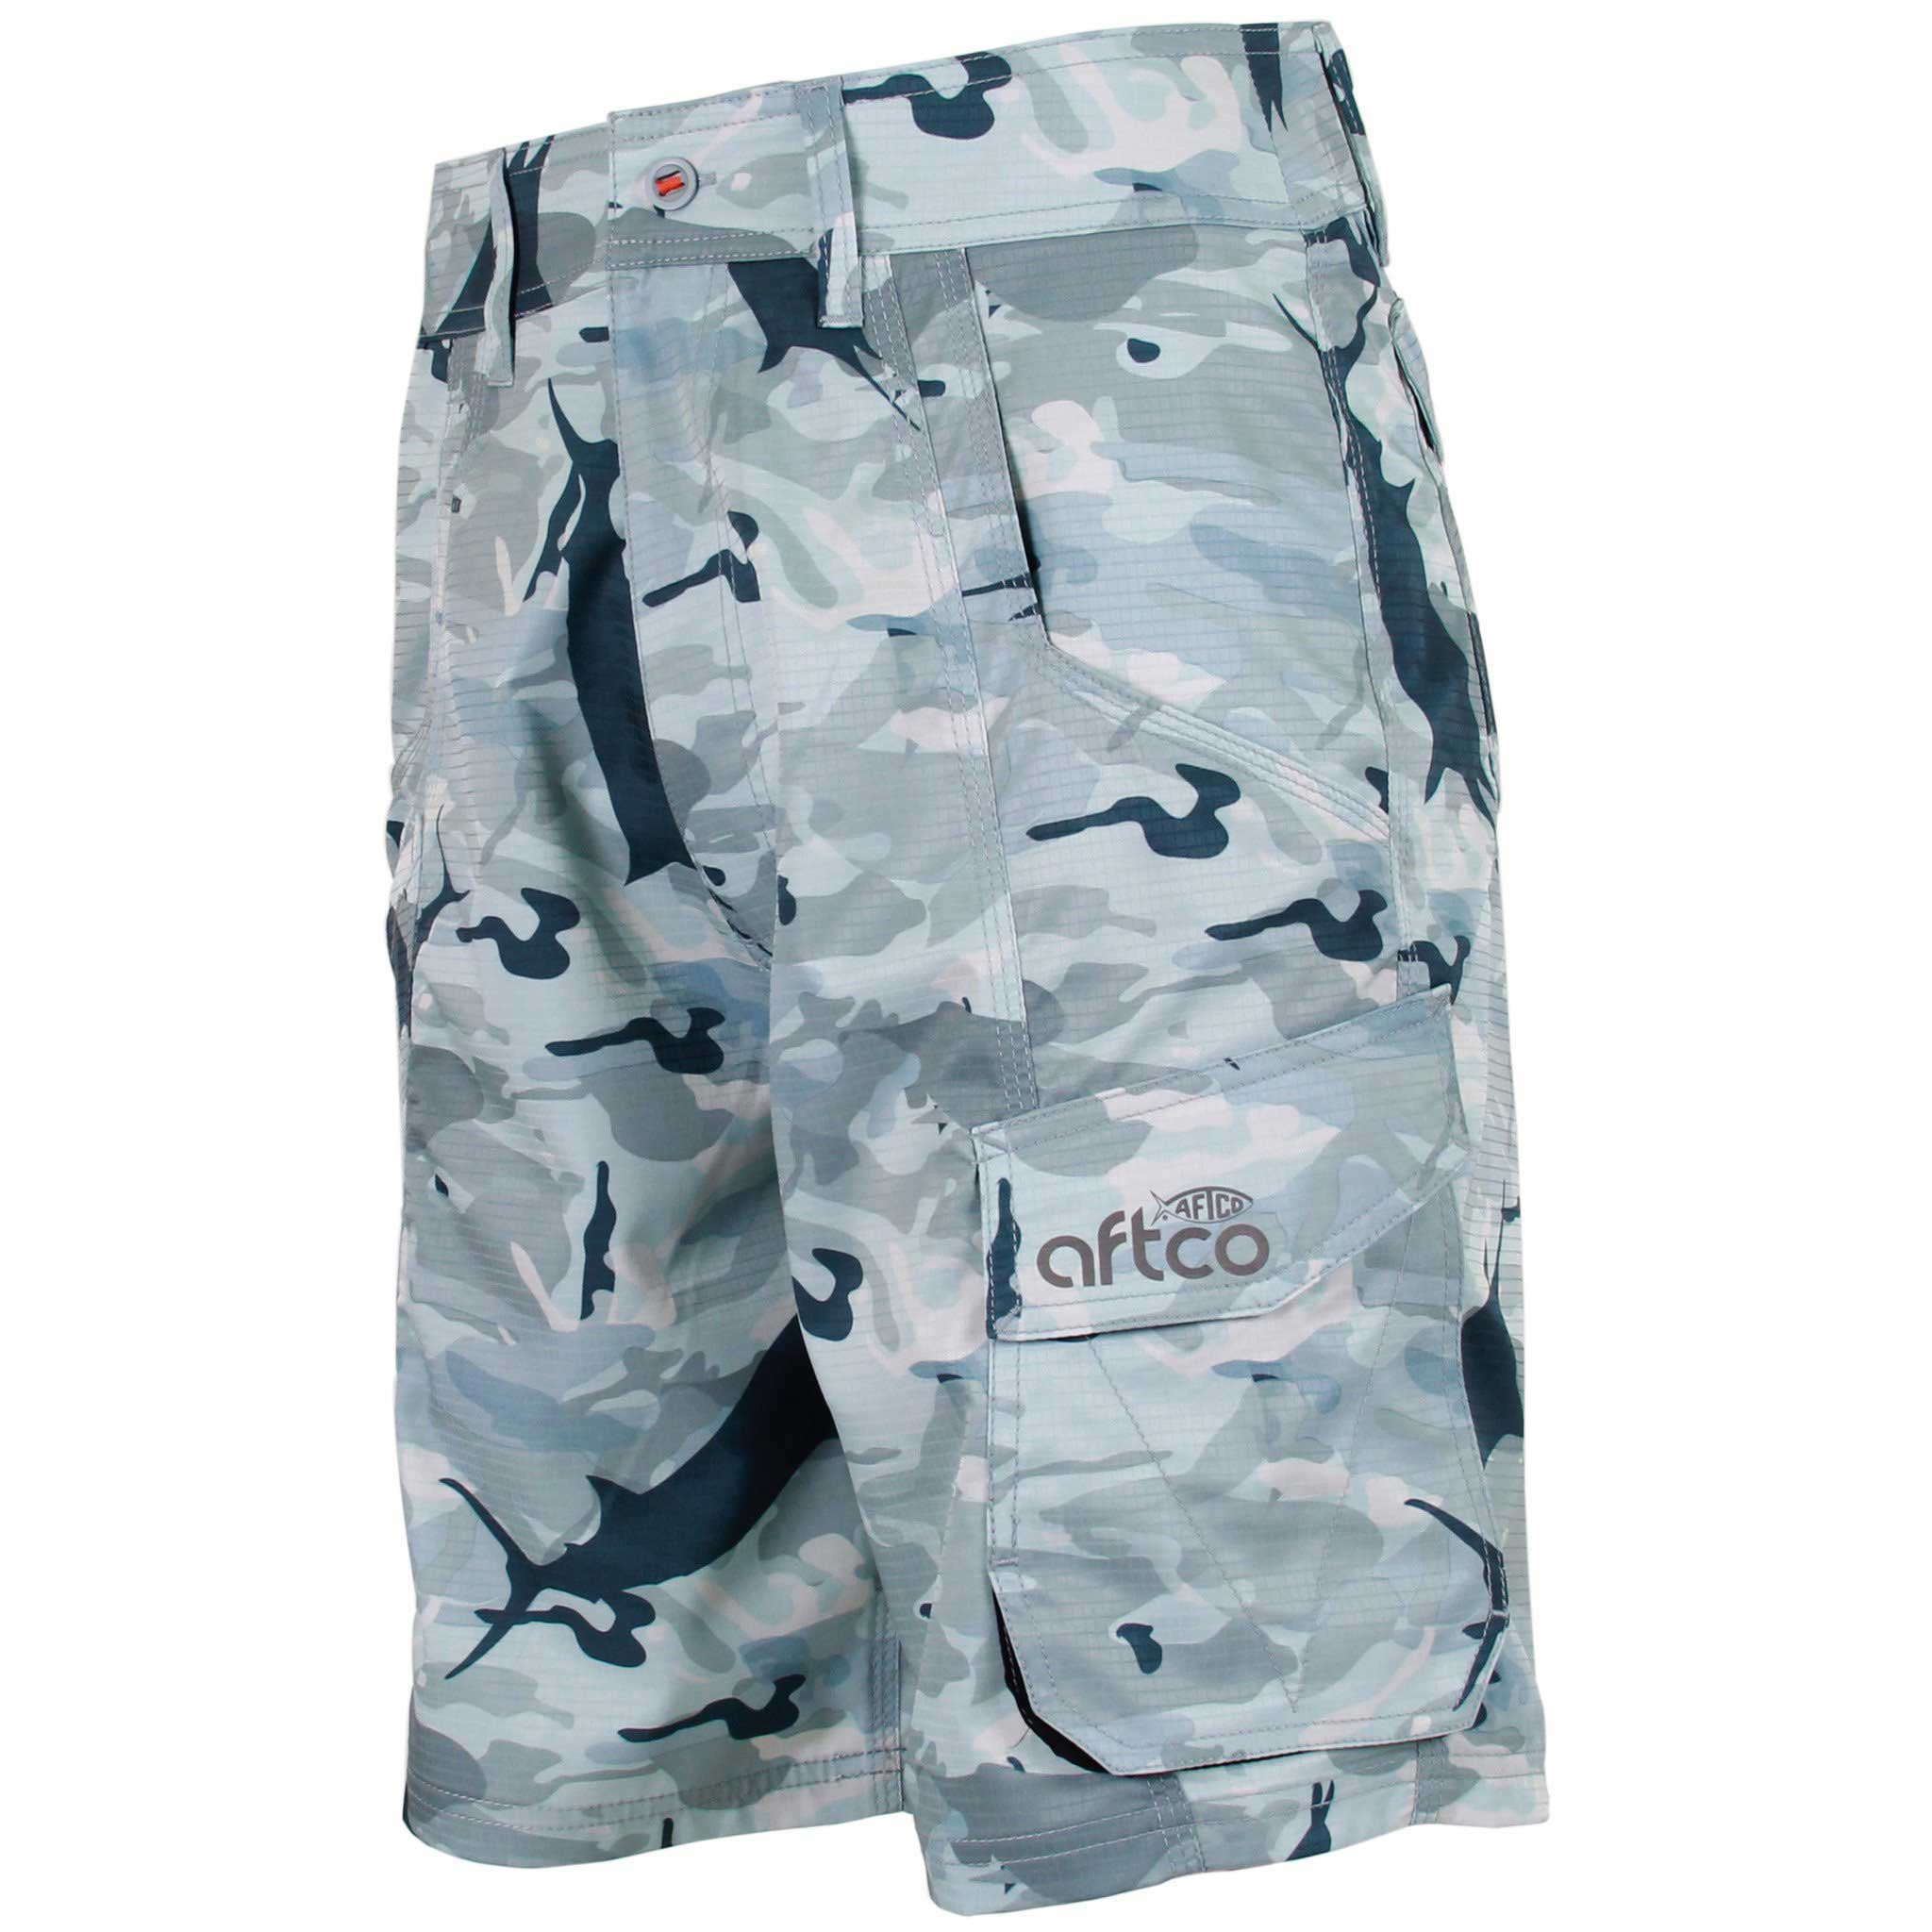 Fishing Shorts - Aftco - Tactical -  Fishing Jigs